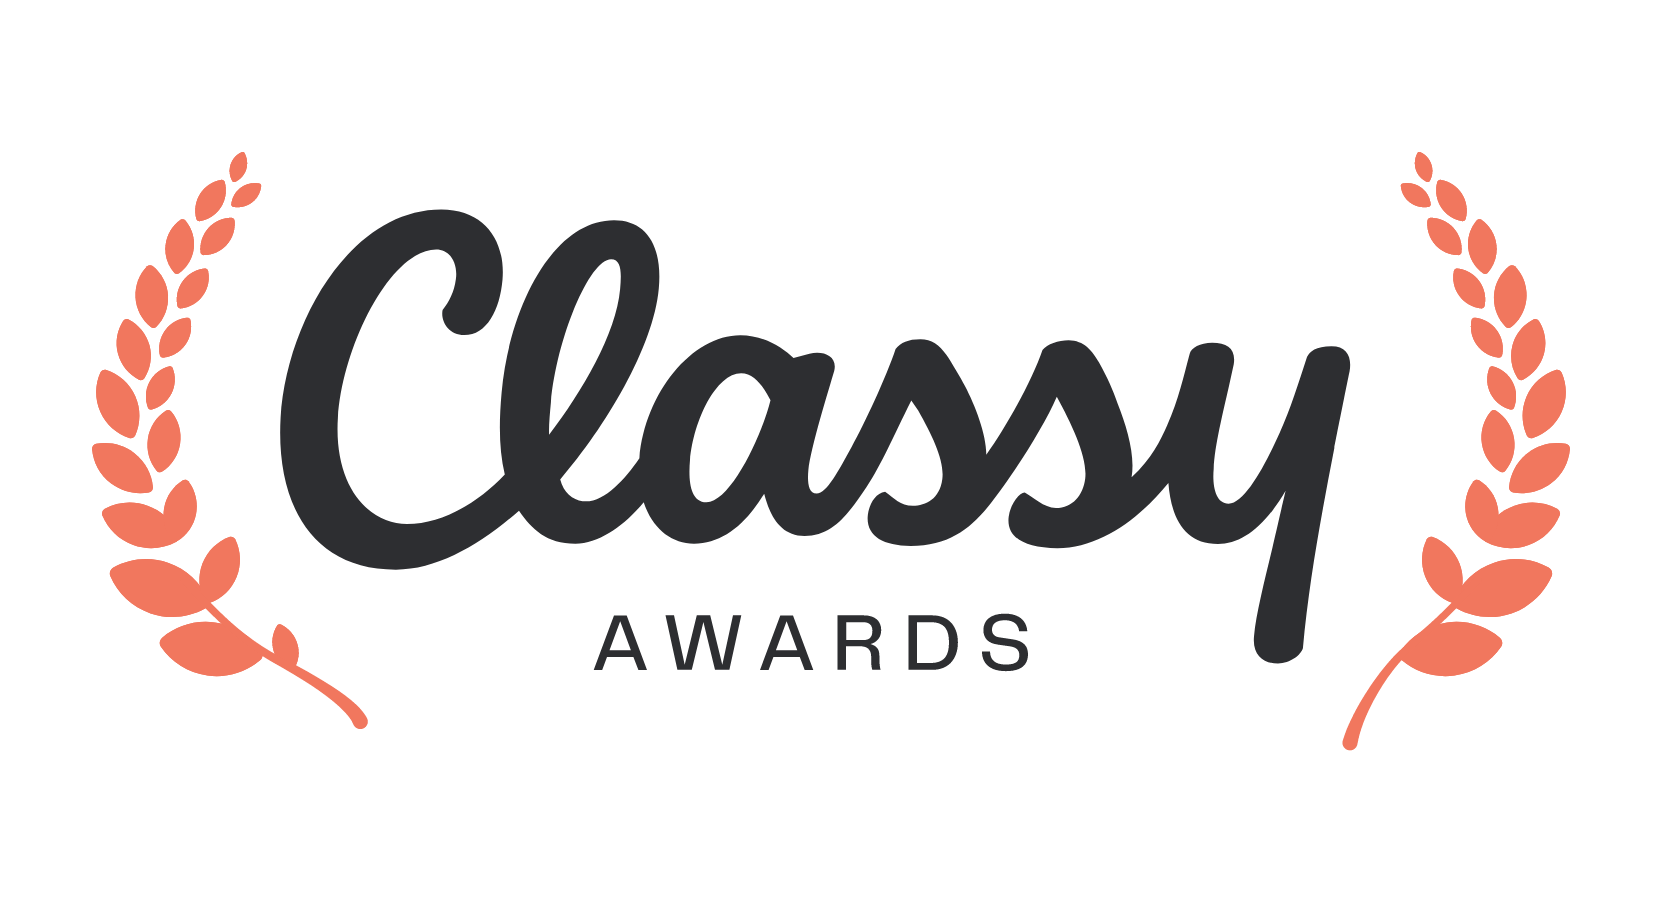 classy-awards